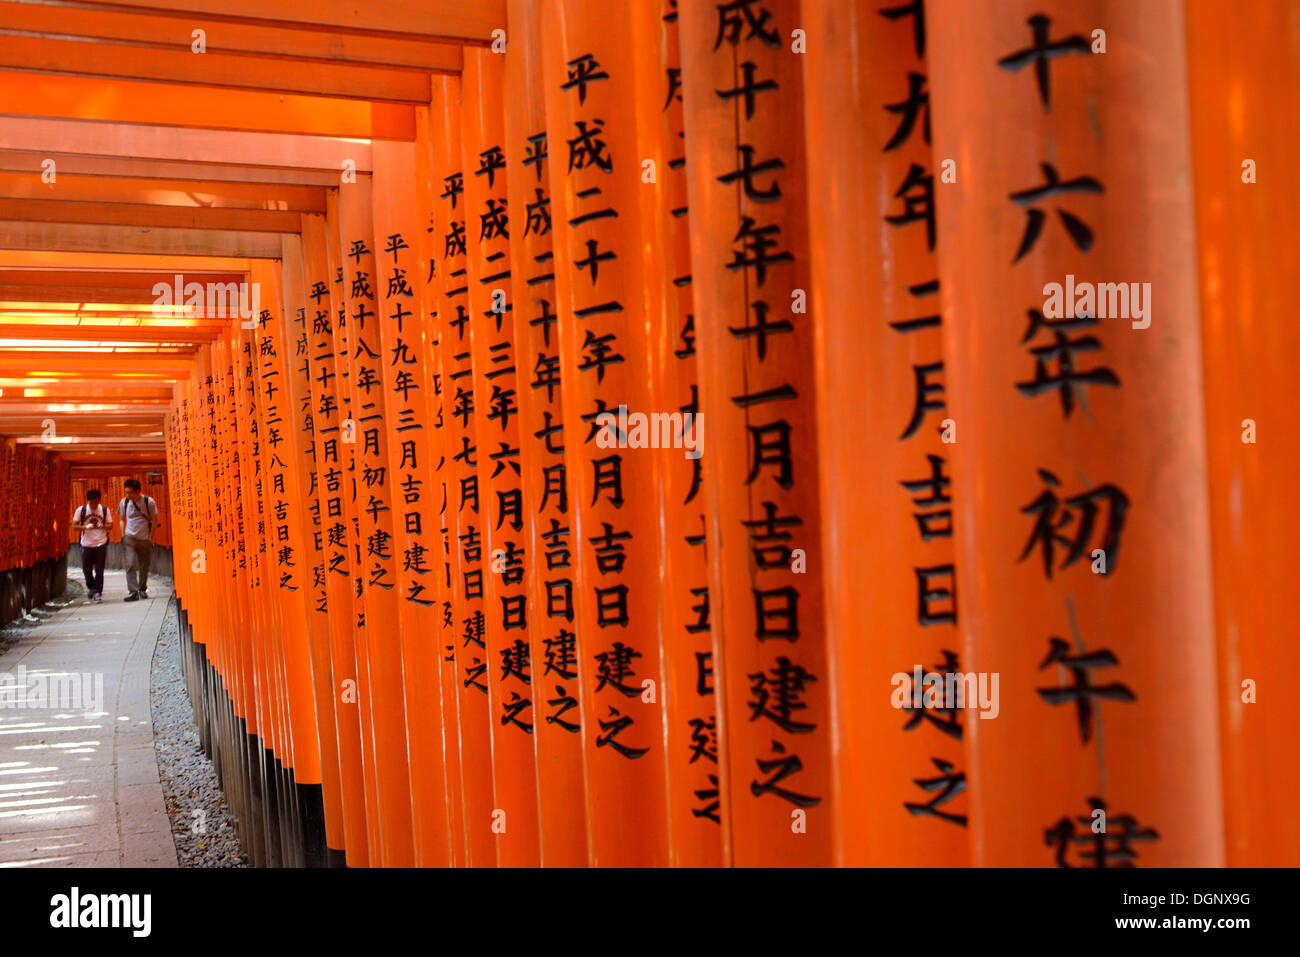 Walkway made of Torii with inscriptions, Fushimi Inari Taisha Shinto shrine, Fushimi, Kyoto, Kinki region, Japan Stock Photo